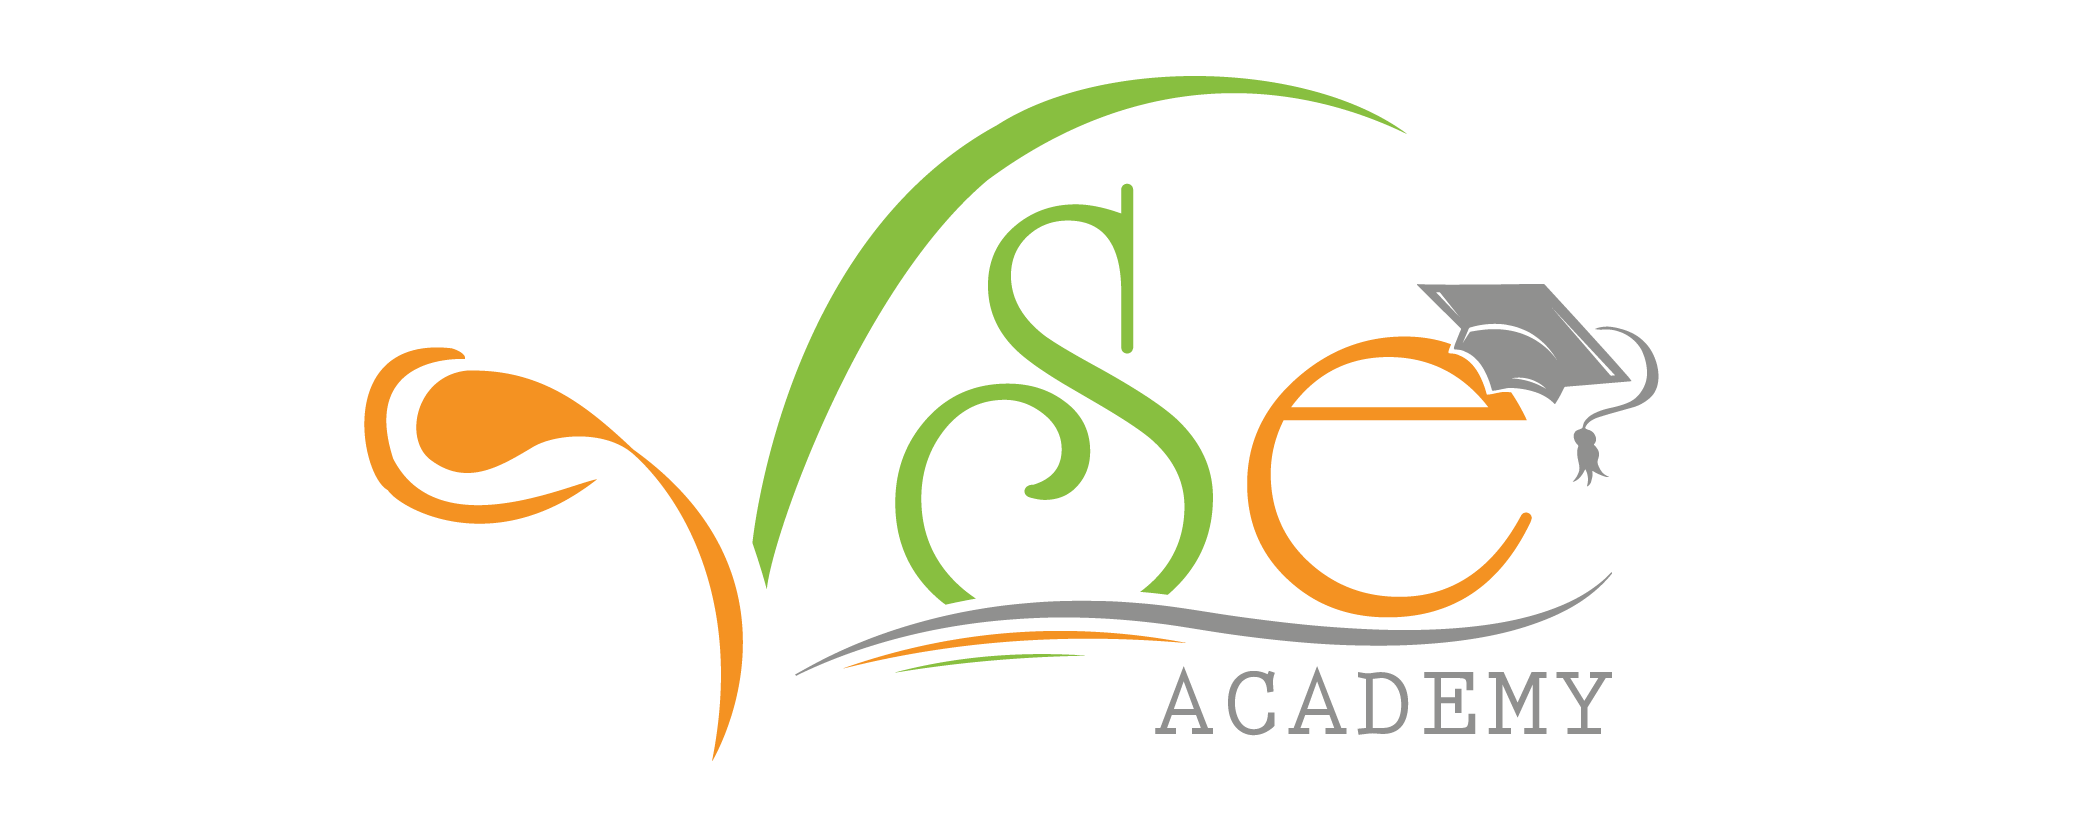 Học viện VSE (Viet Spa Education Academy) <br/> Đơn vị chuyên đào tạo Chủ - Quản lý - Chuyên viên Spa